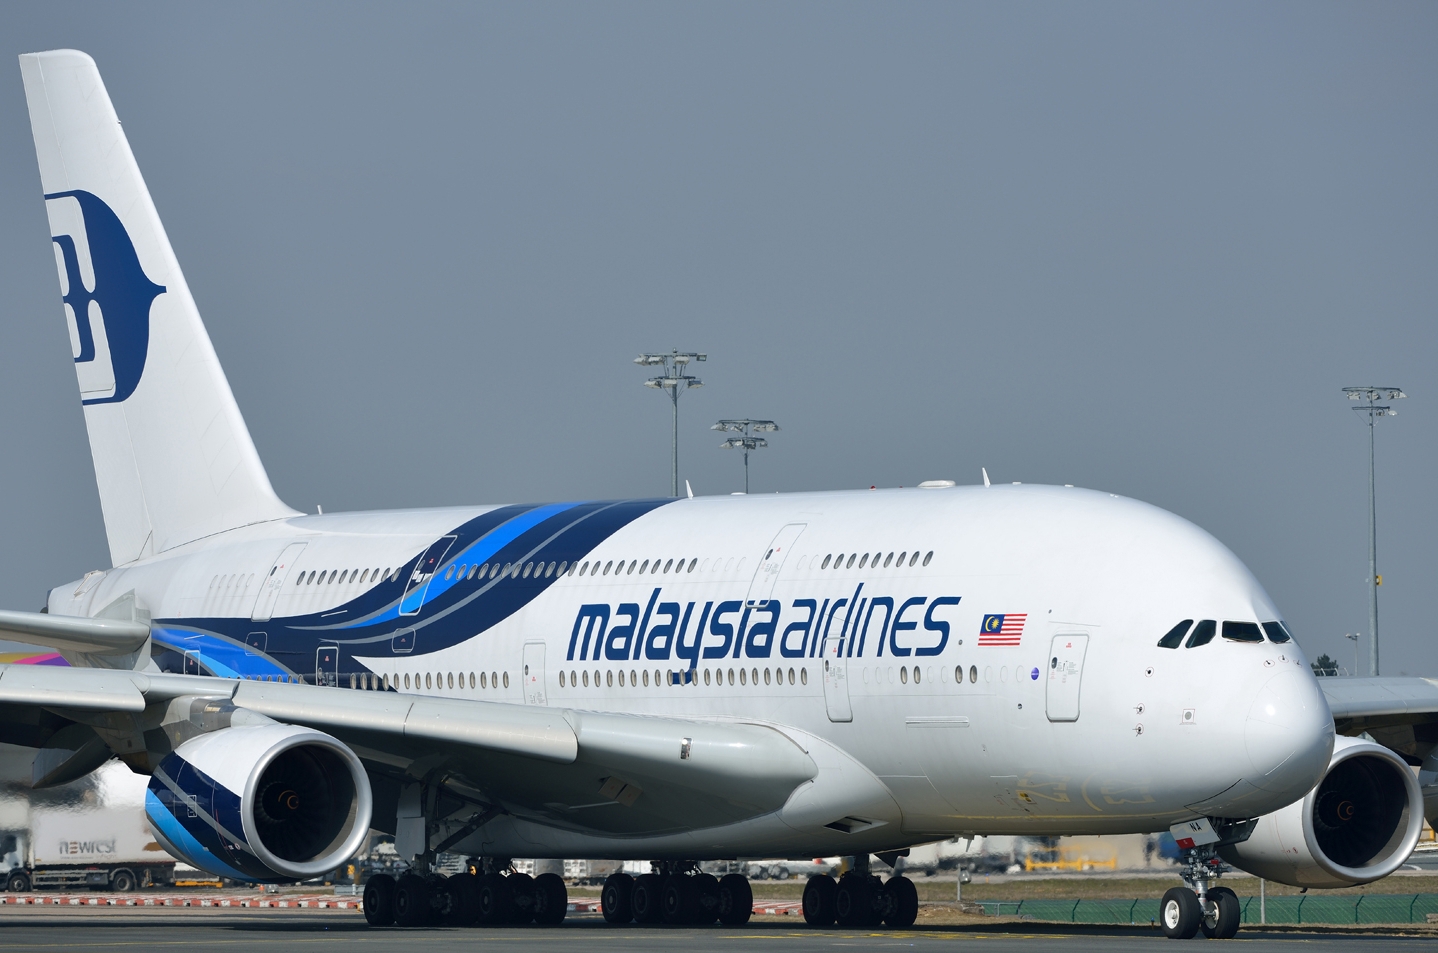  Chuyện gì sẽ xảy ra tiếp theo với Malaysia Airlines?